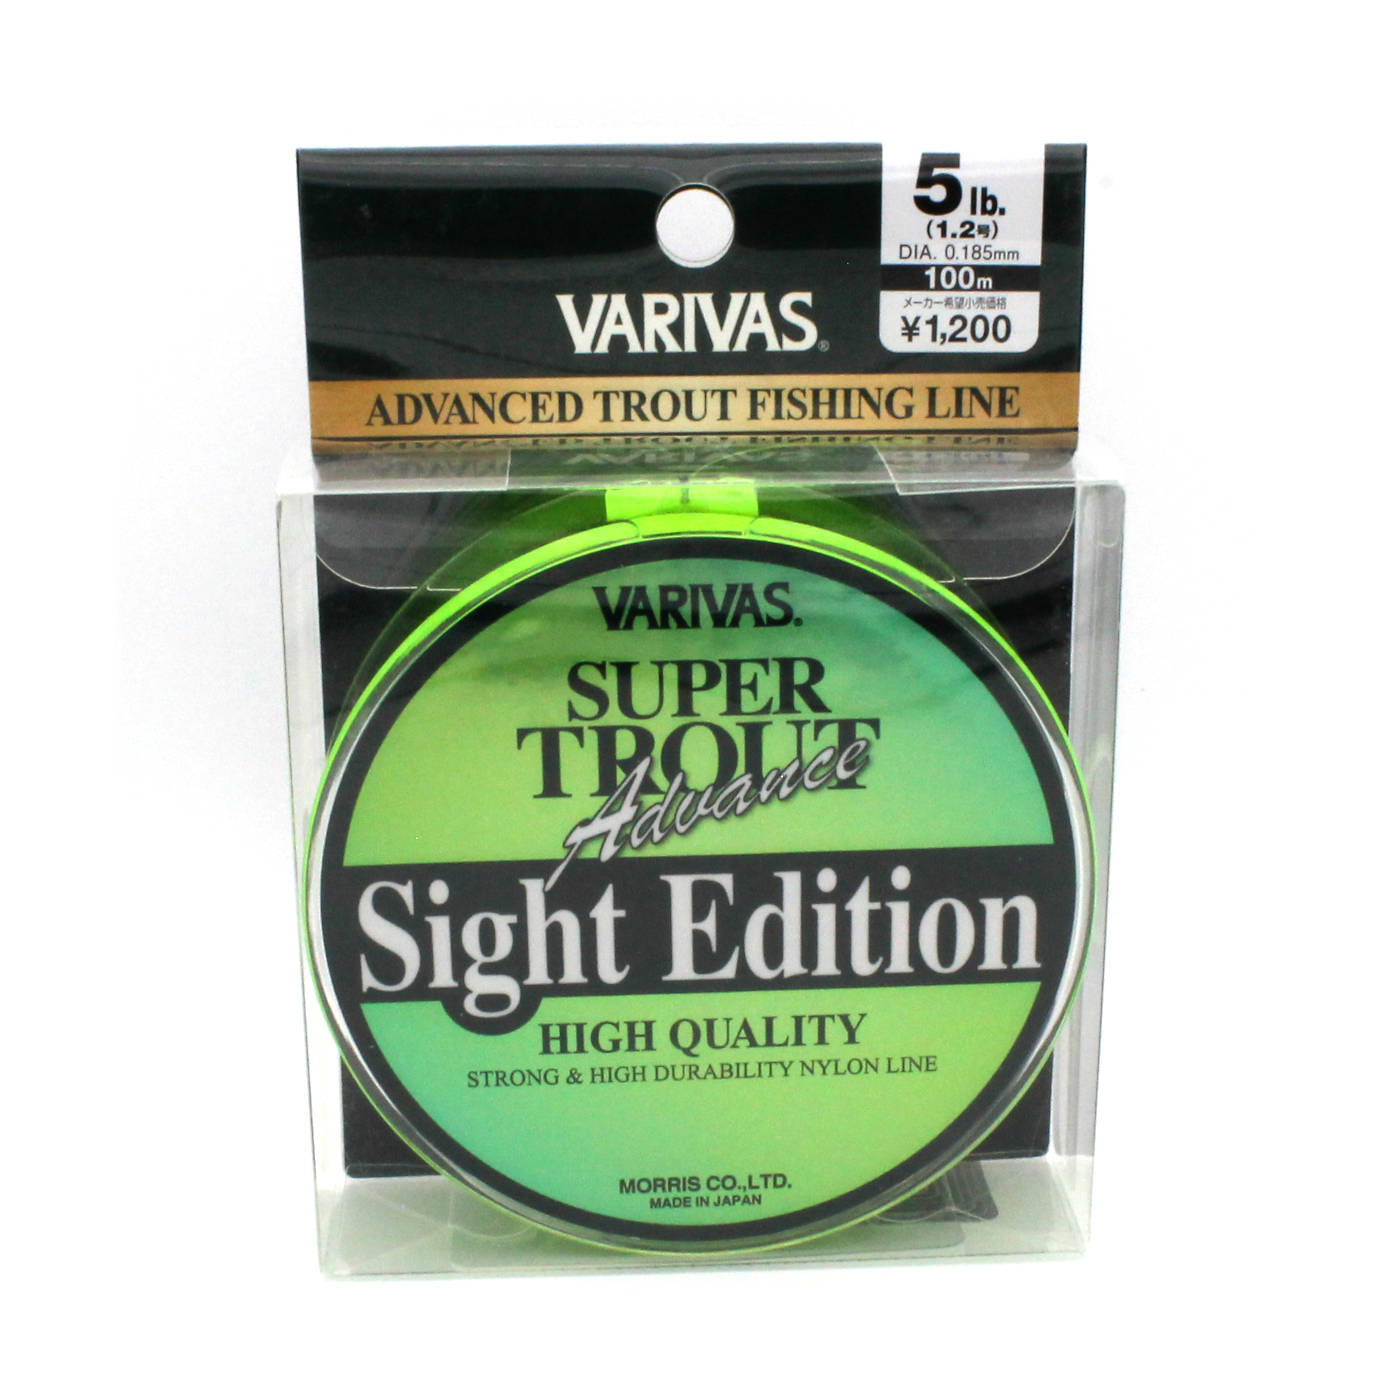 Details about   VARIVAS Super Trout Advance Sight Edition Nylon Line 100m #1 4lb 